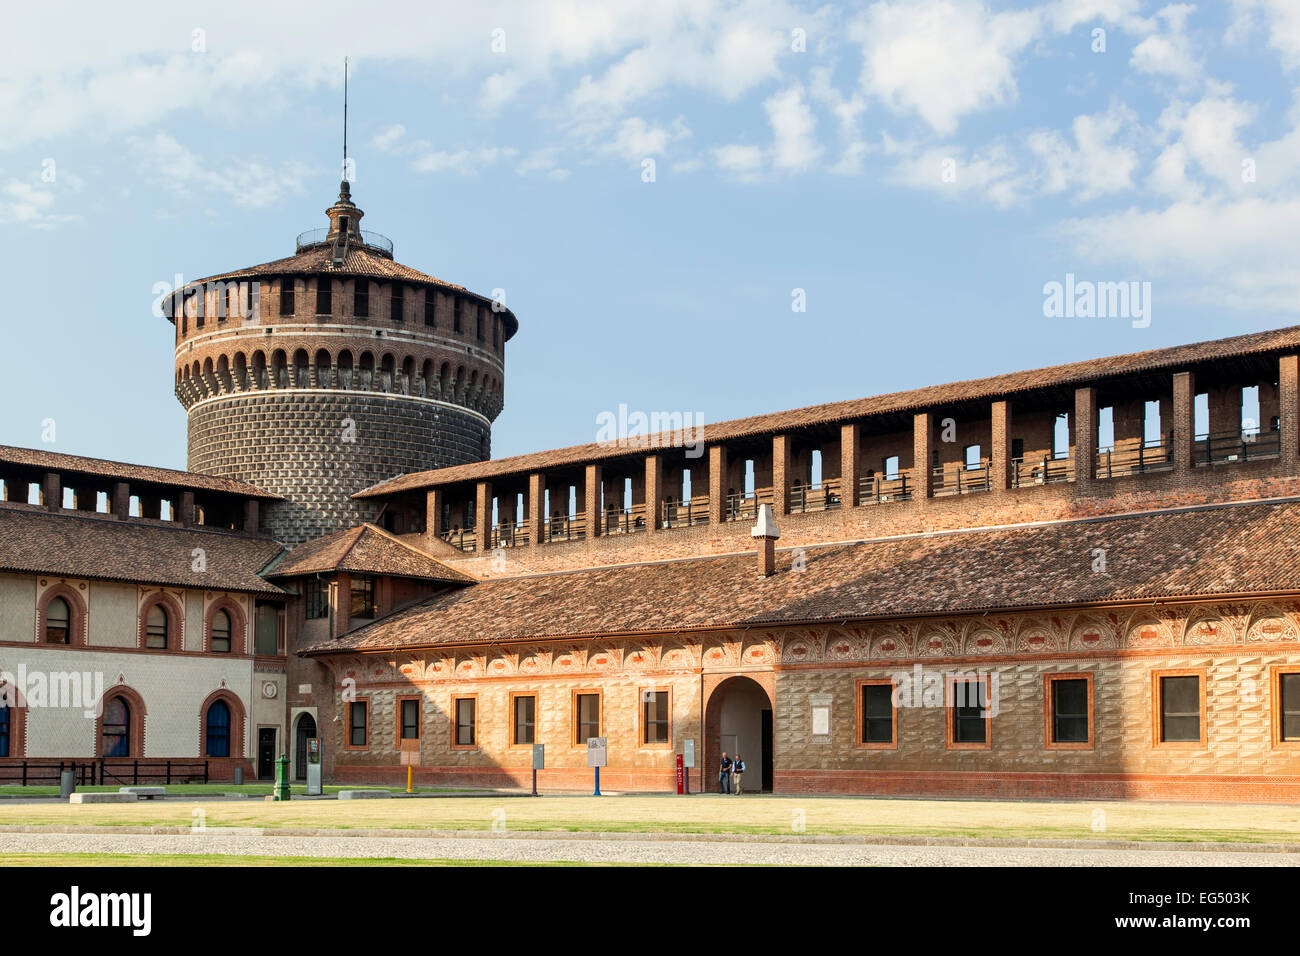 La torre e gli edifici dal cortile interno del Castello Sforzesco di Milano, Italia Foto Stock